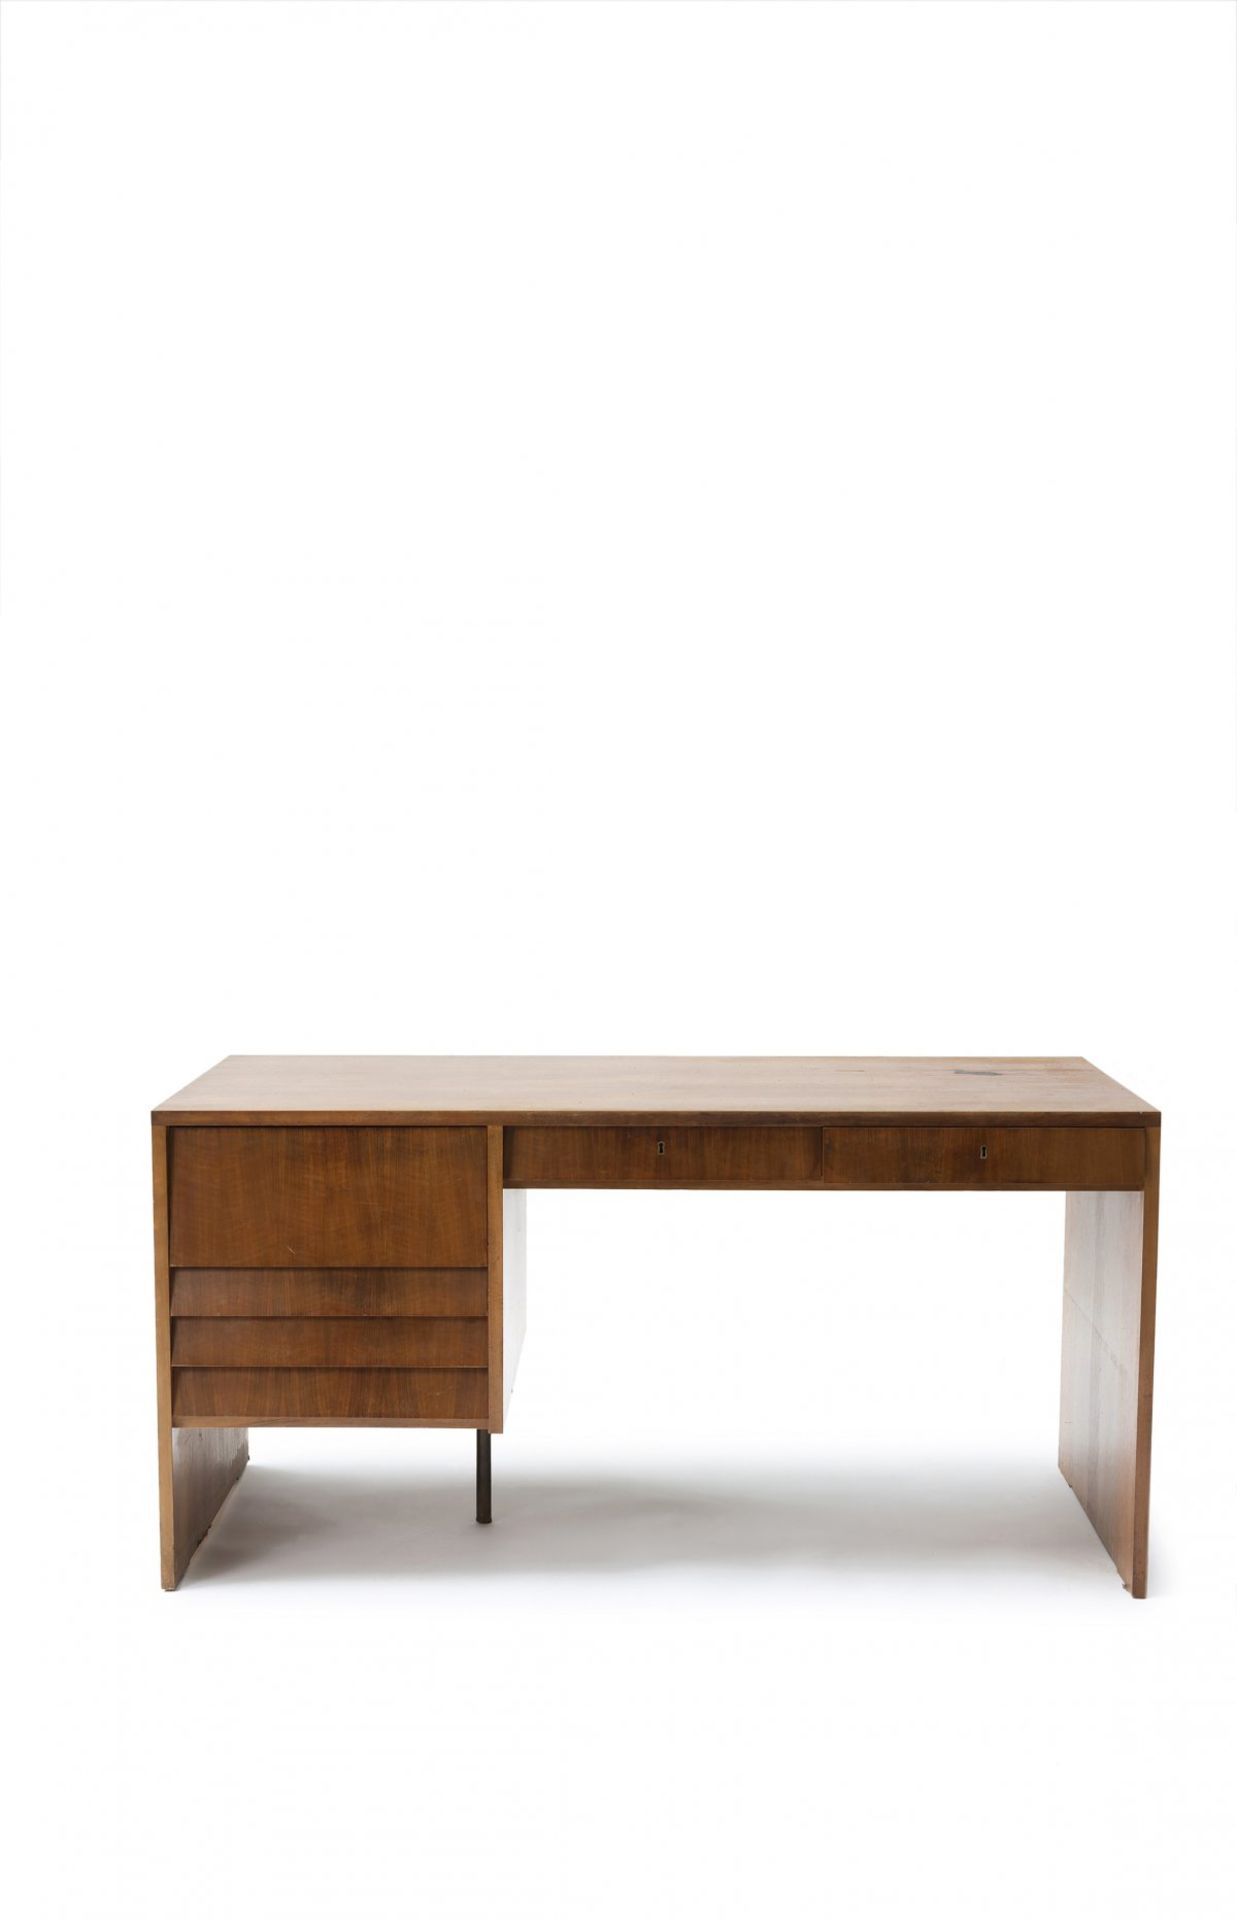 Otl Aicher, Desk, c. 1955Desk, c. 1955H. 75 x 149 x 74.5 cm. Wooden construction, plywood,